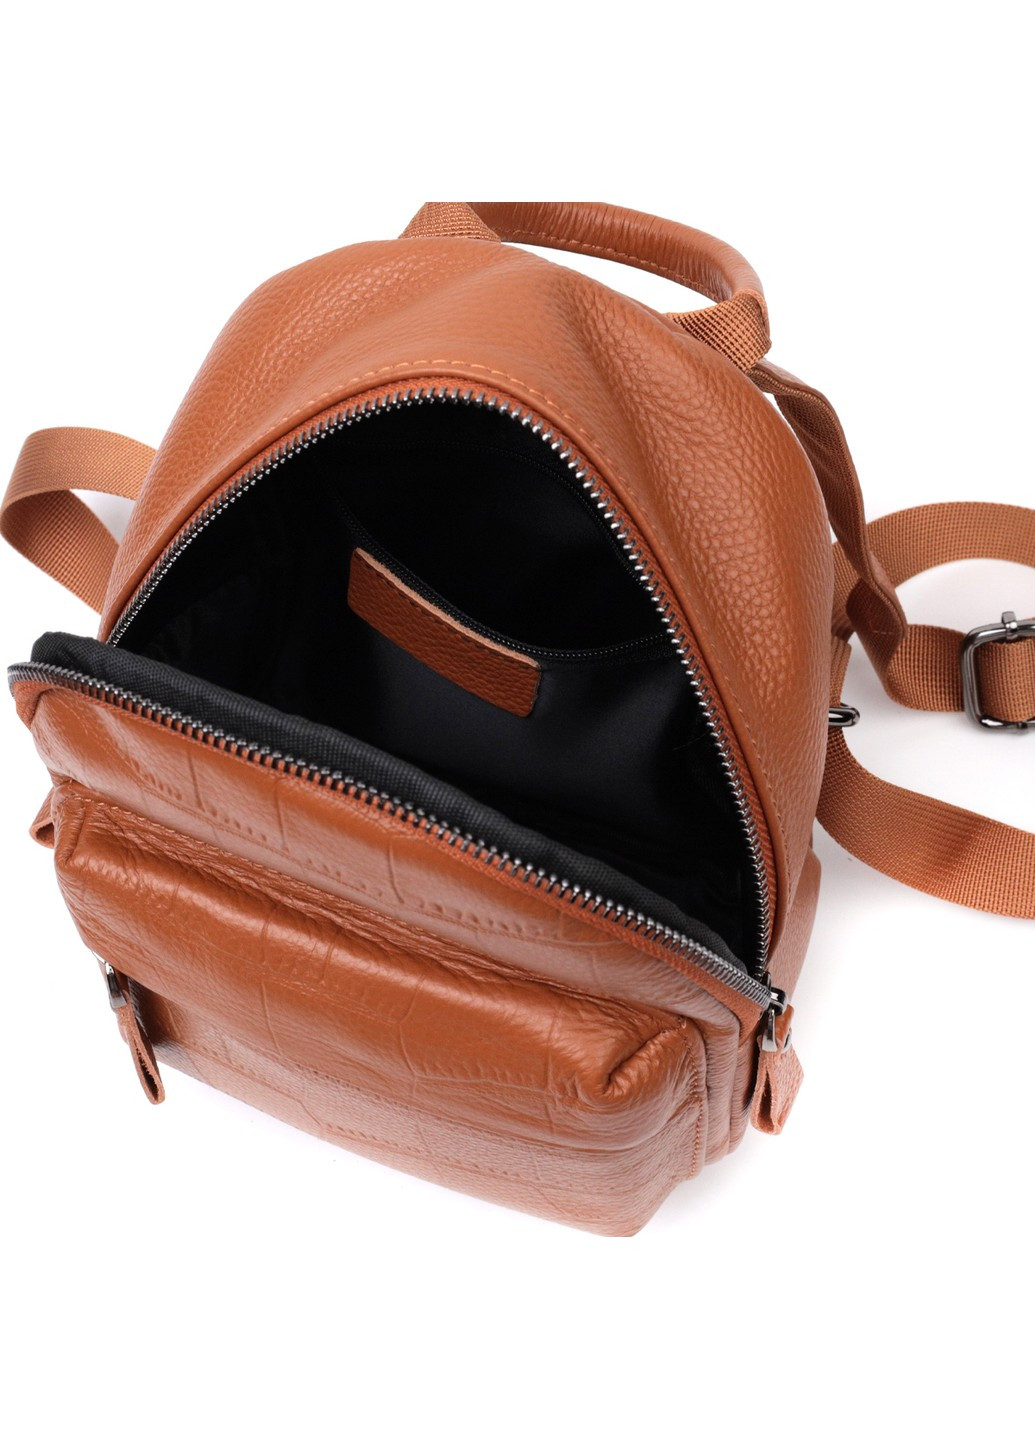 Невеликий стильний рюкзак з натуральної шкіри 22433 Коричневий Vintage (276461845)